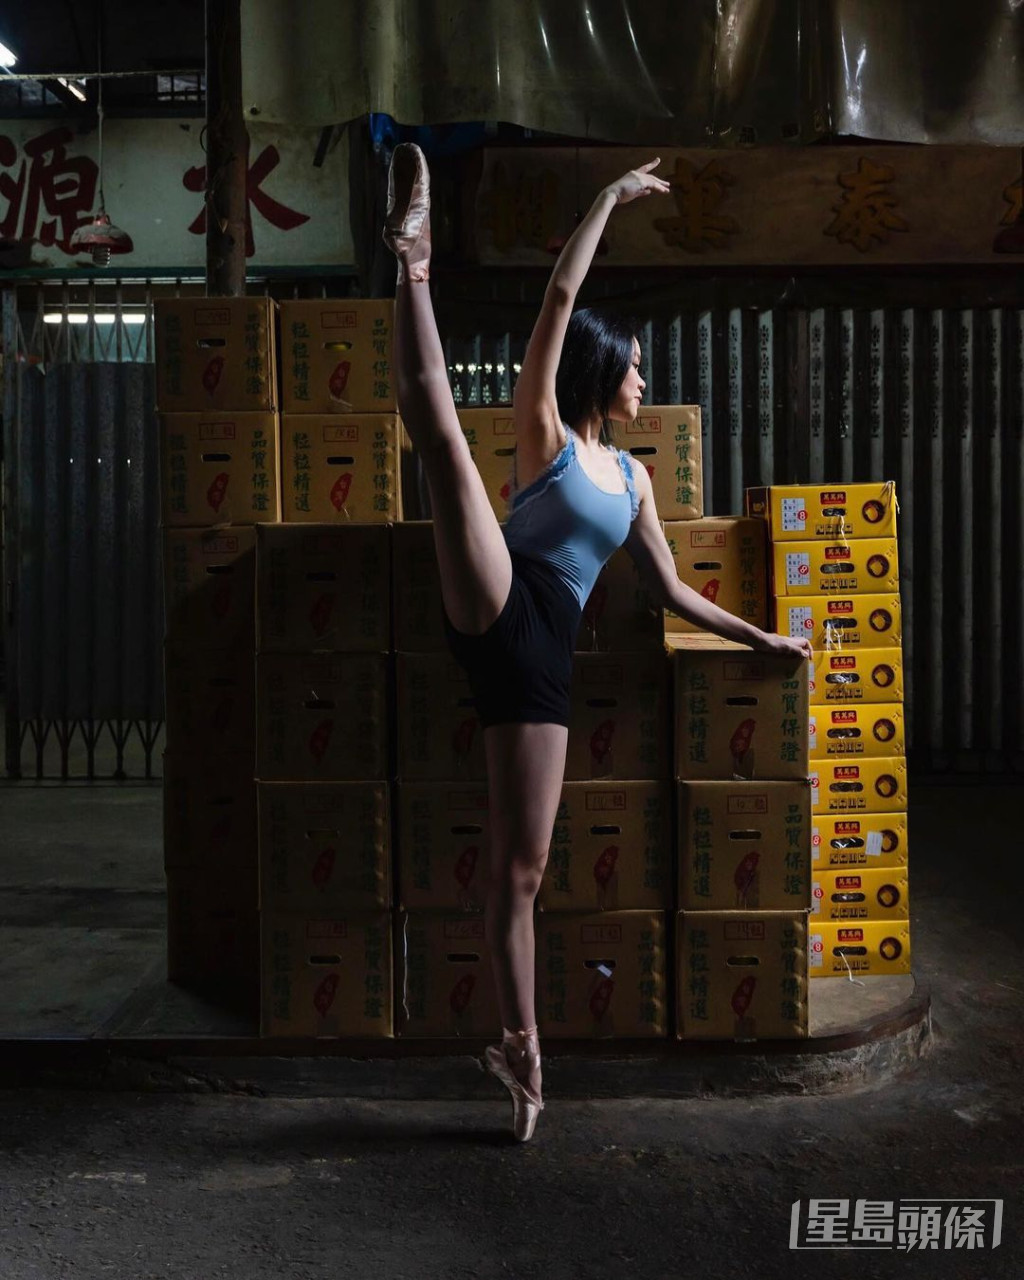 劉秀盈試過去果欄擺芭蕾舞甫士拍硬照。